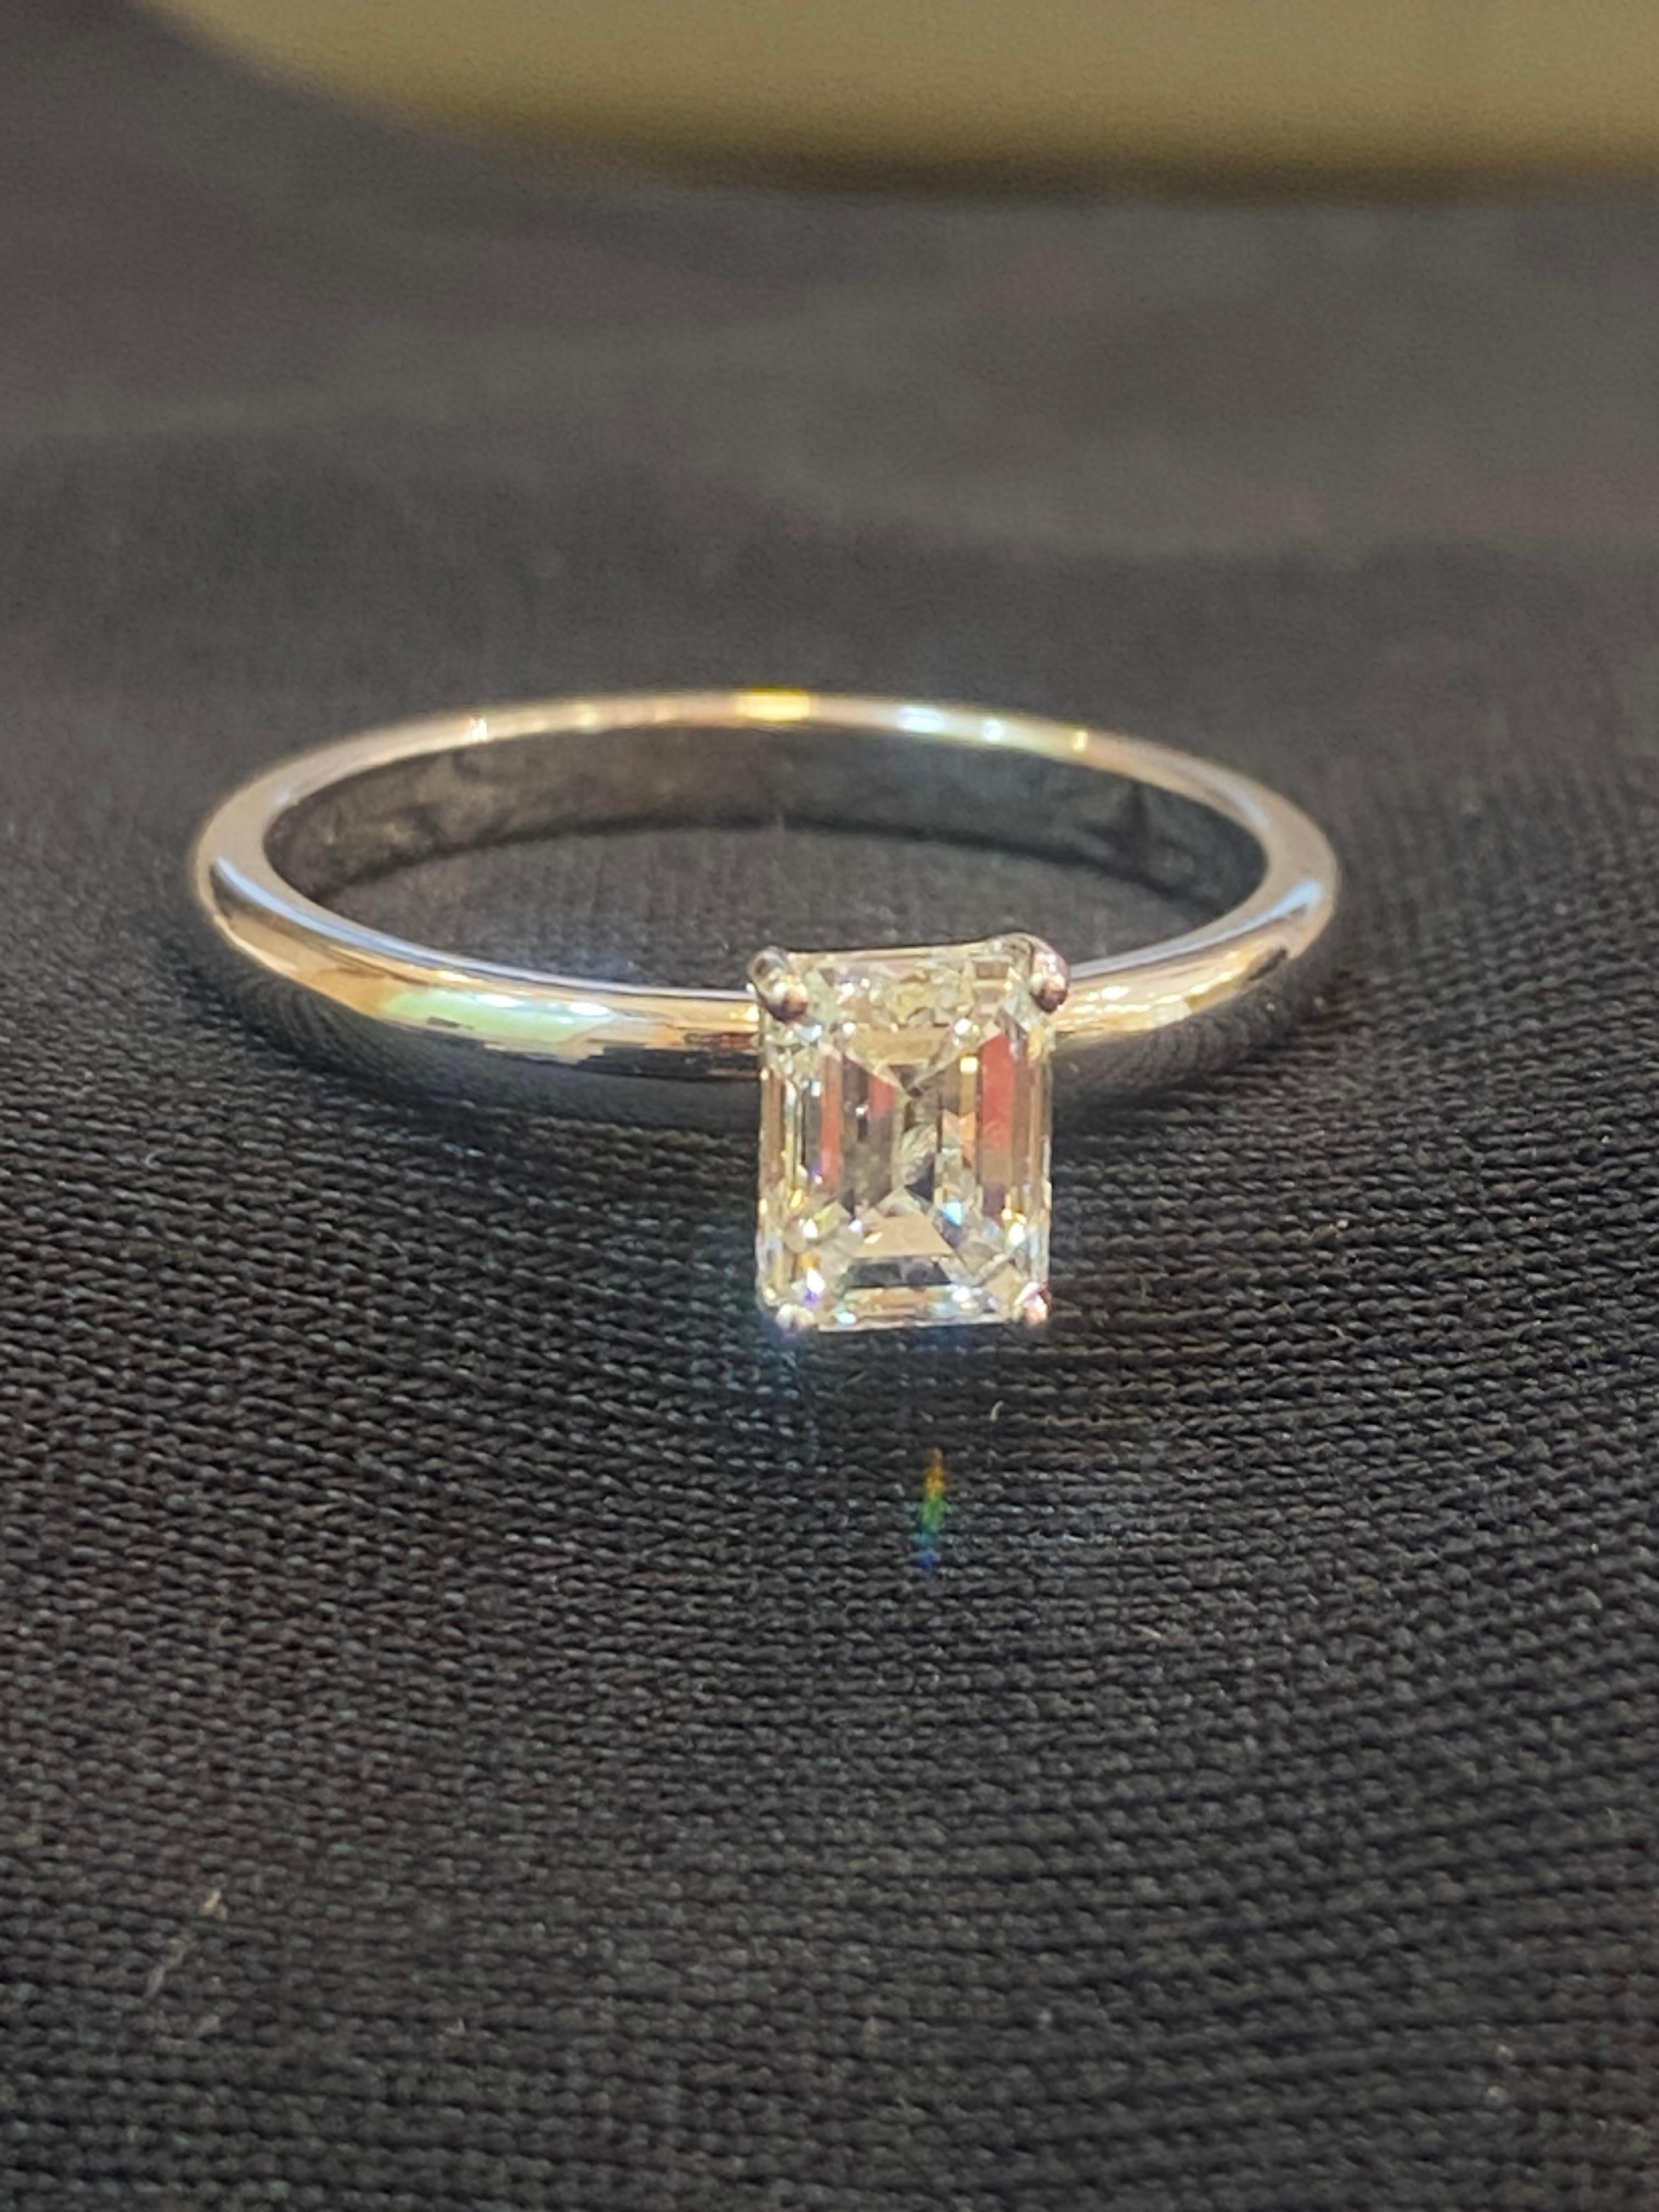 Créez un lien éternel avec cette bague exquise ornée d'un diamant émeraude certifié GIA de 0,90 carat G/VS2 serti dans de l'or blanc 18 carats. Le cadeau idéal pour toutes les occasions !

Spécifications : 

Taille de la bague : 6 (taille